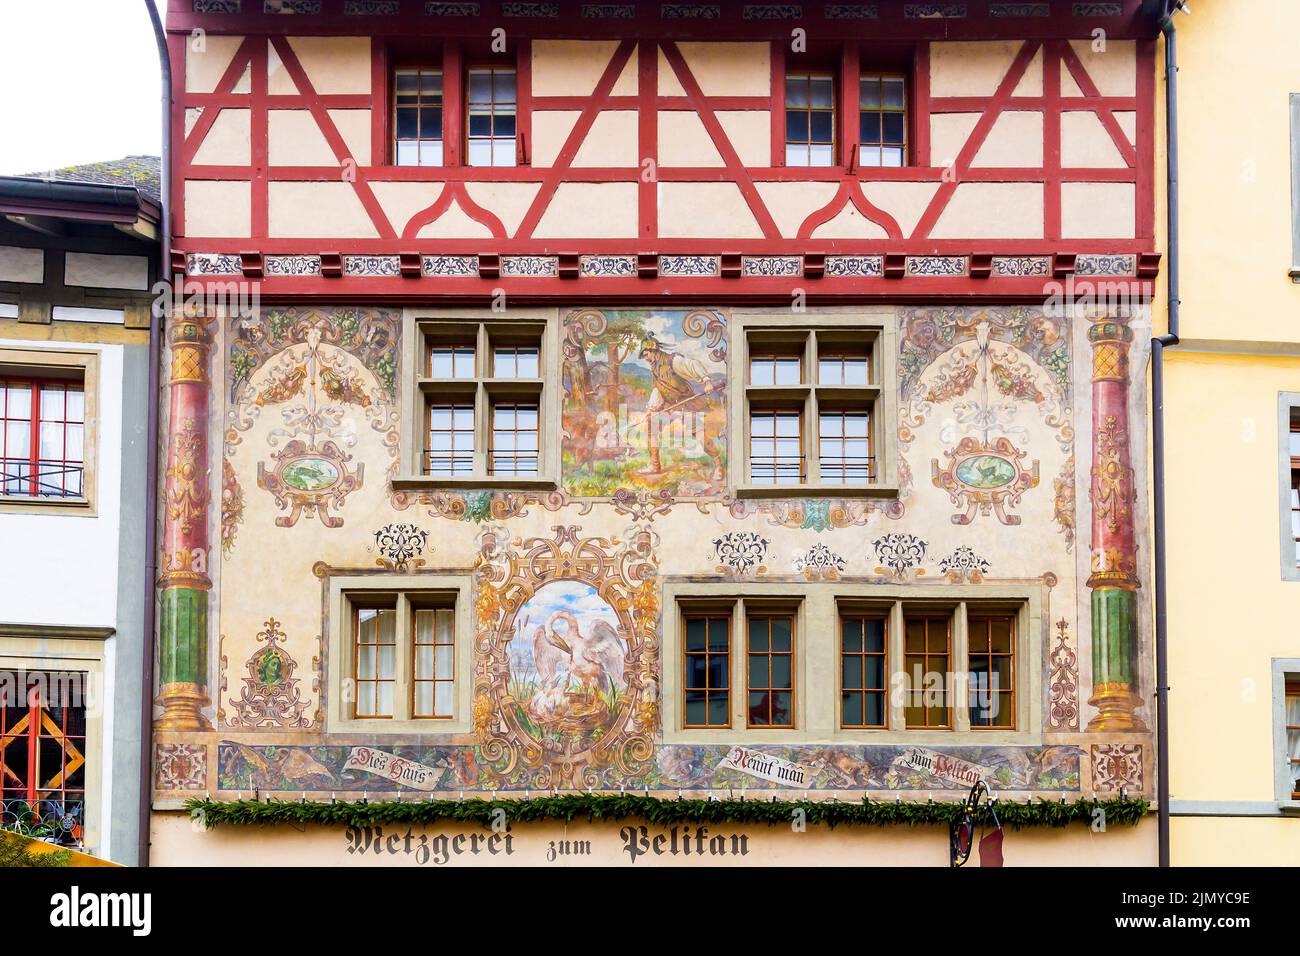 Painted facades in Stein am Rhein, Switzerland, Stock Photo